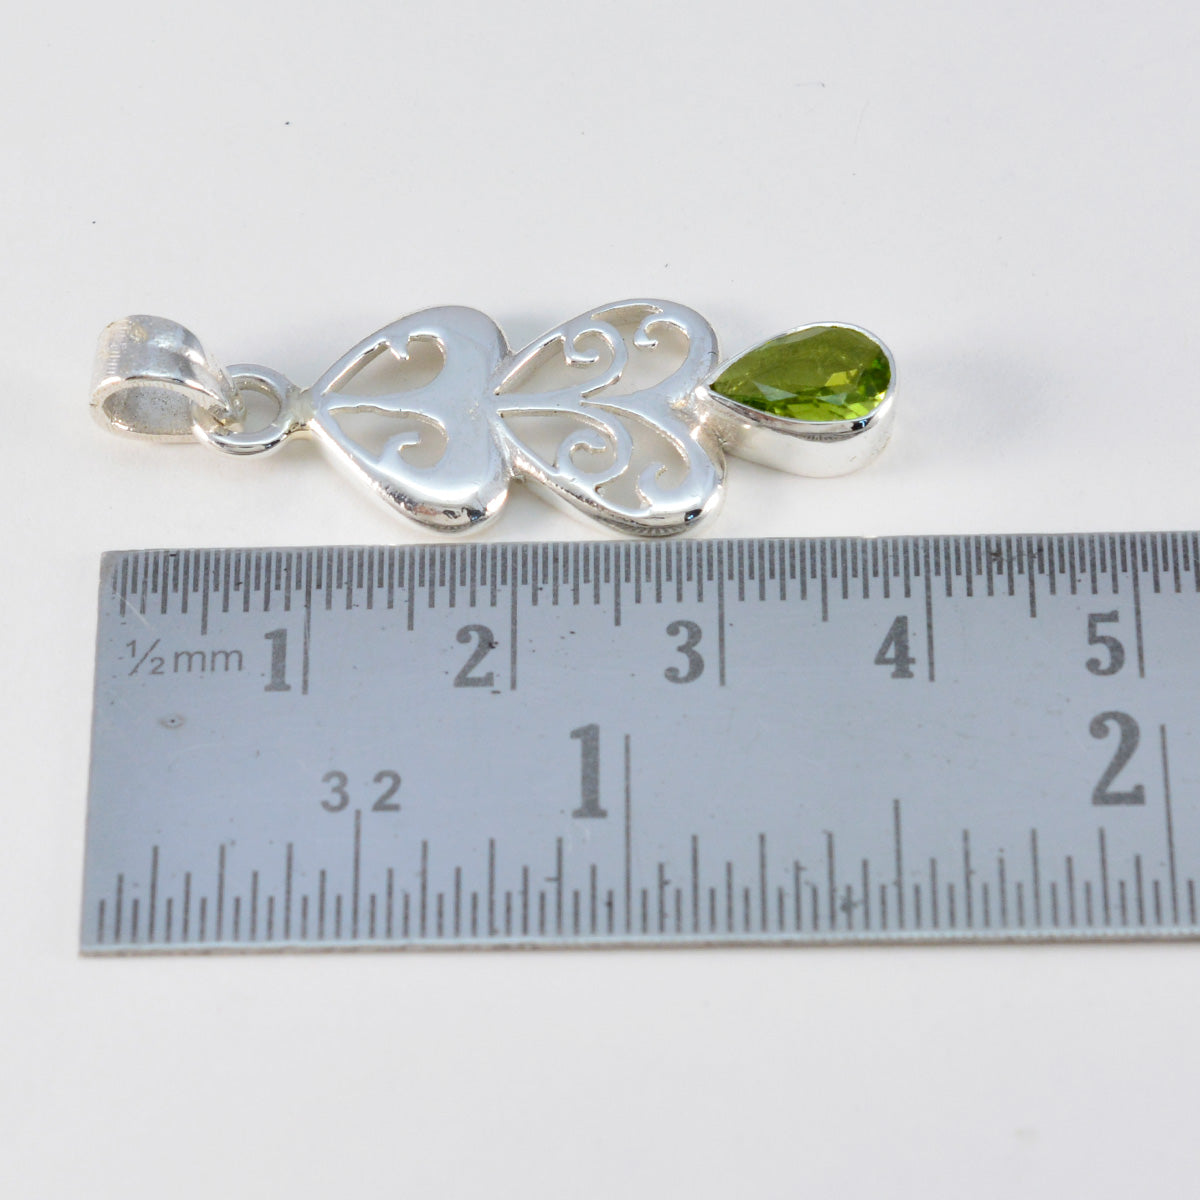 riyo spunky драгоценный камень груша ограненный зеленый перидот стерлингового серебра 959 пробы подарок на день учителя